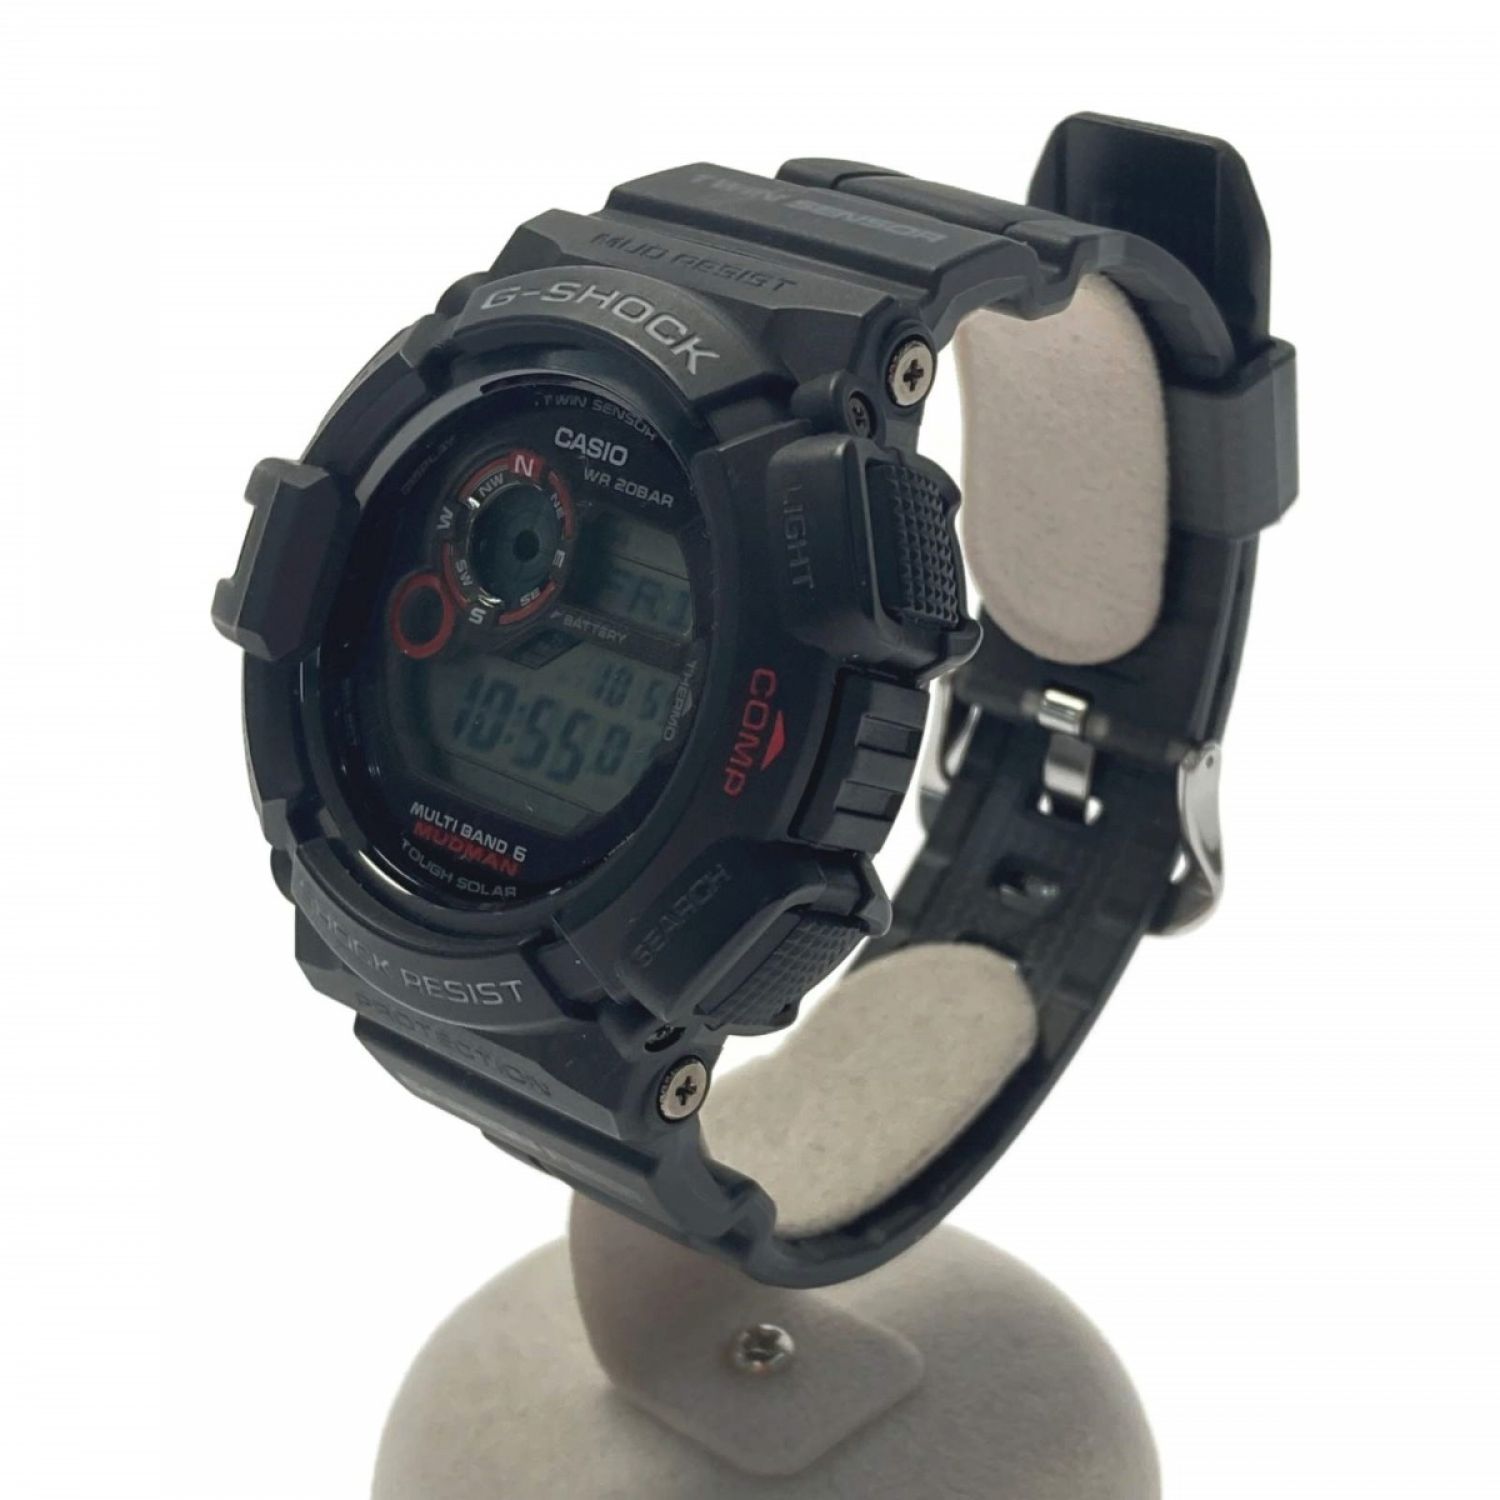 カシオ G-Shock MUDMAN ソーラー電波時計 GW-9300-1JF - 腕時計(デジタル)